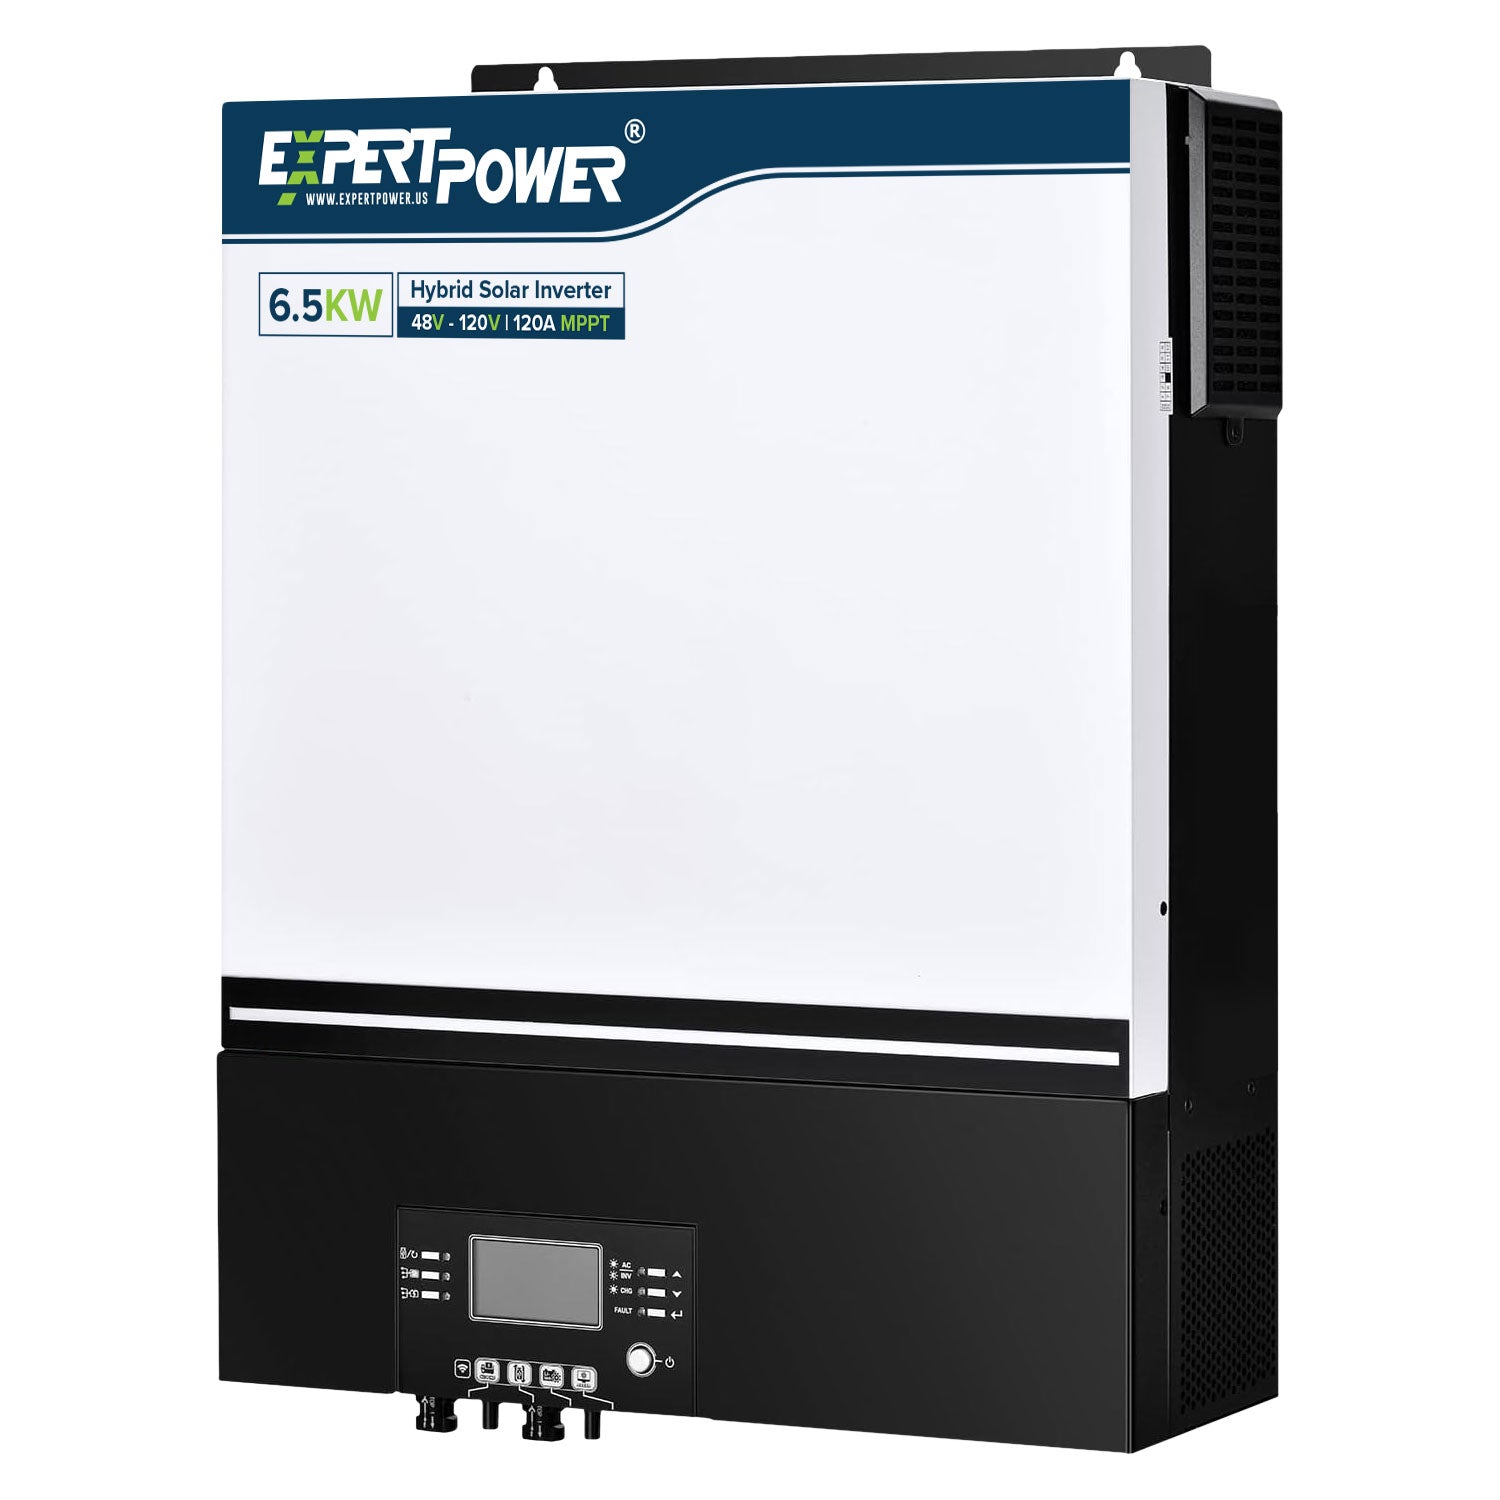 6500W 48V - 120V Hybrid Solar Inverter